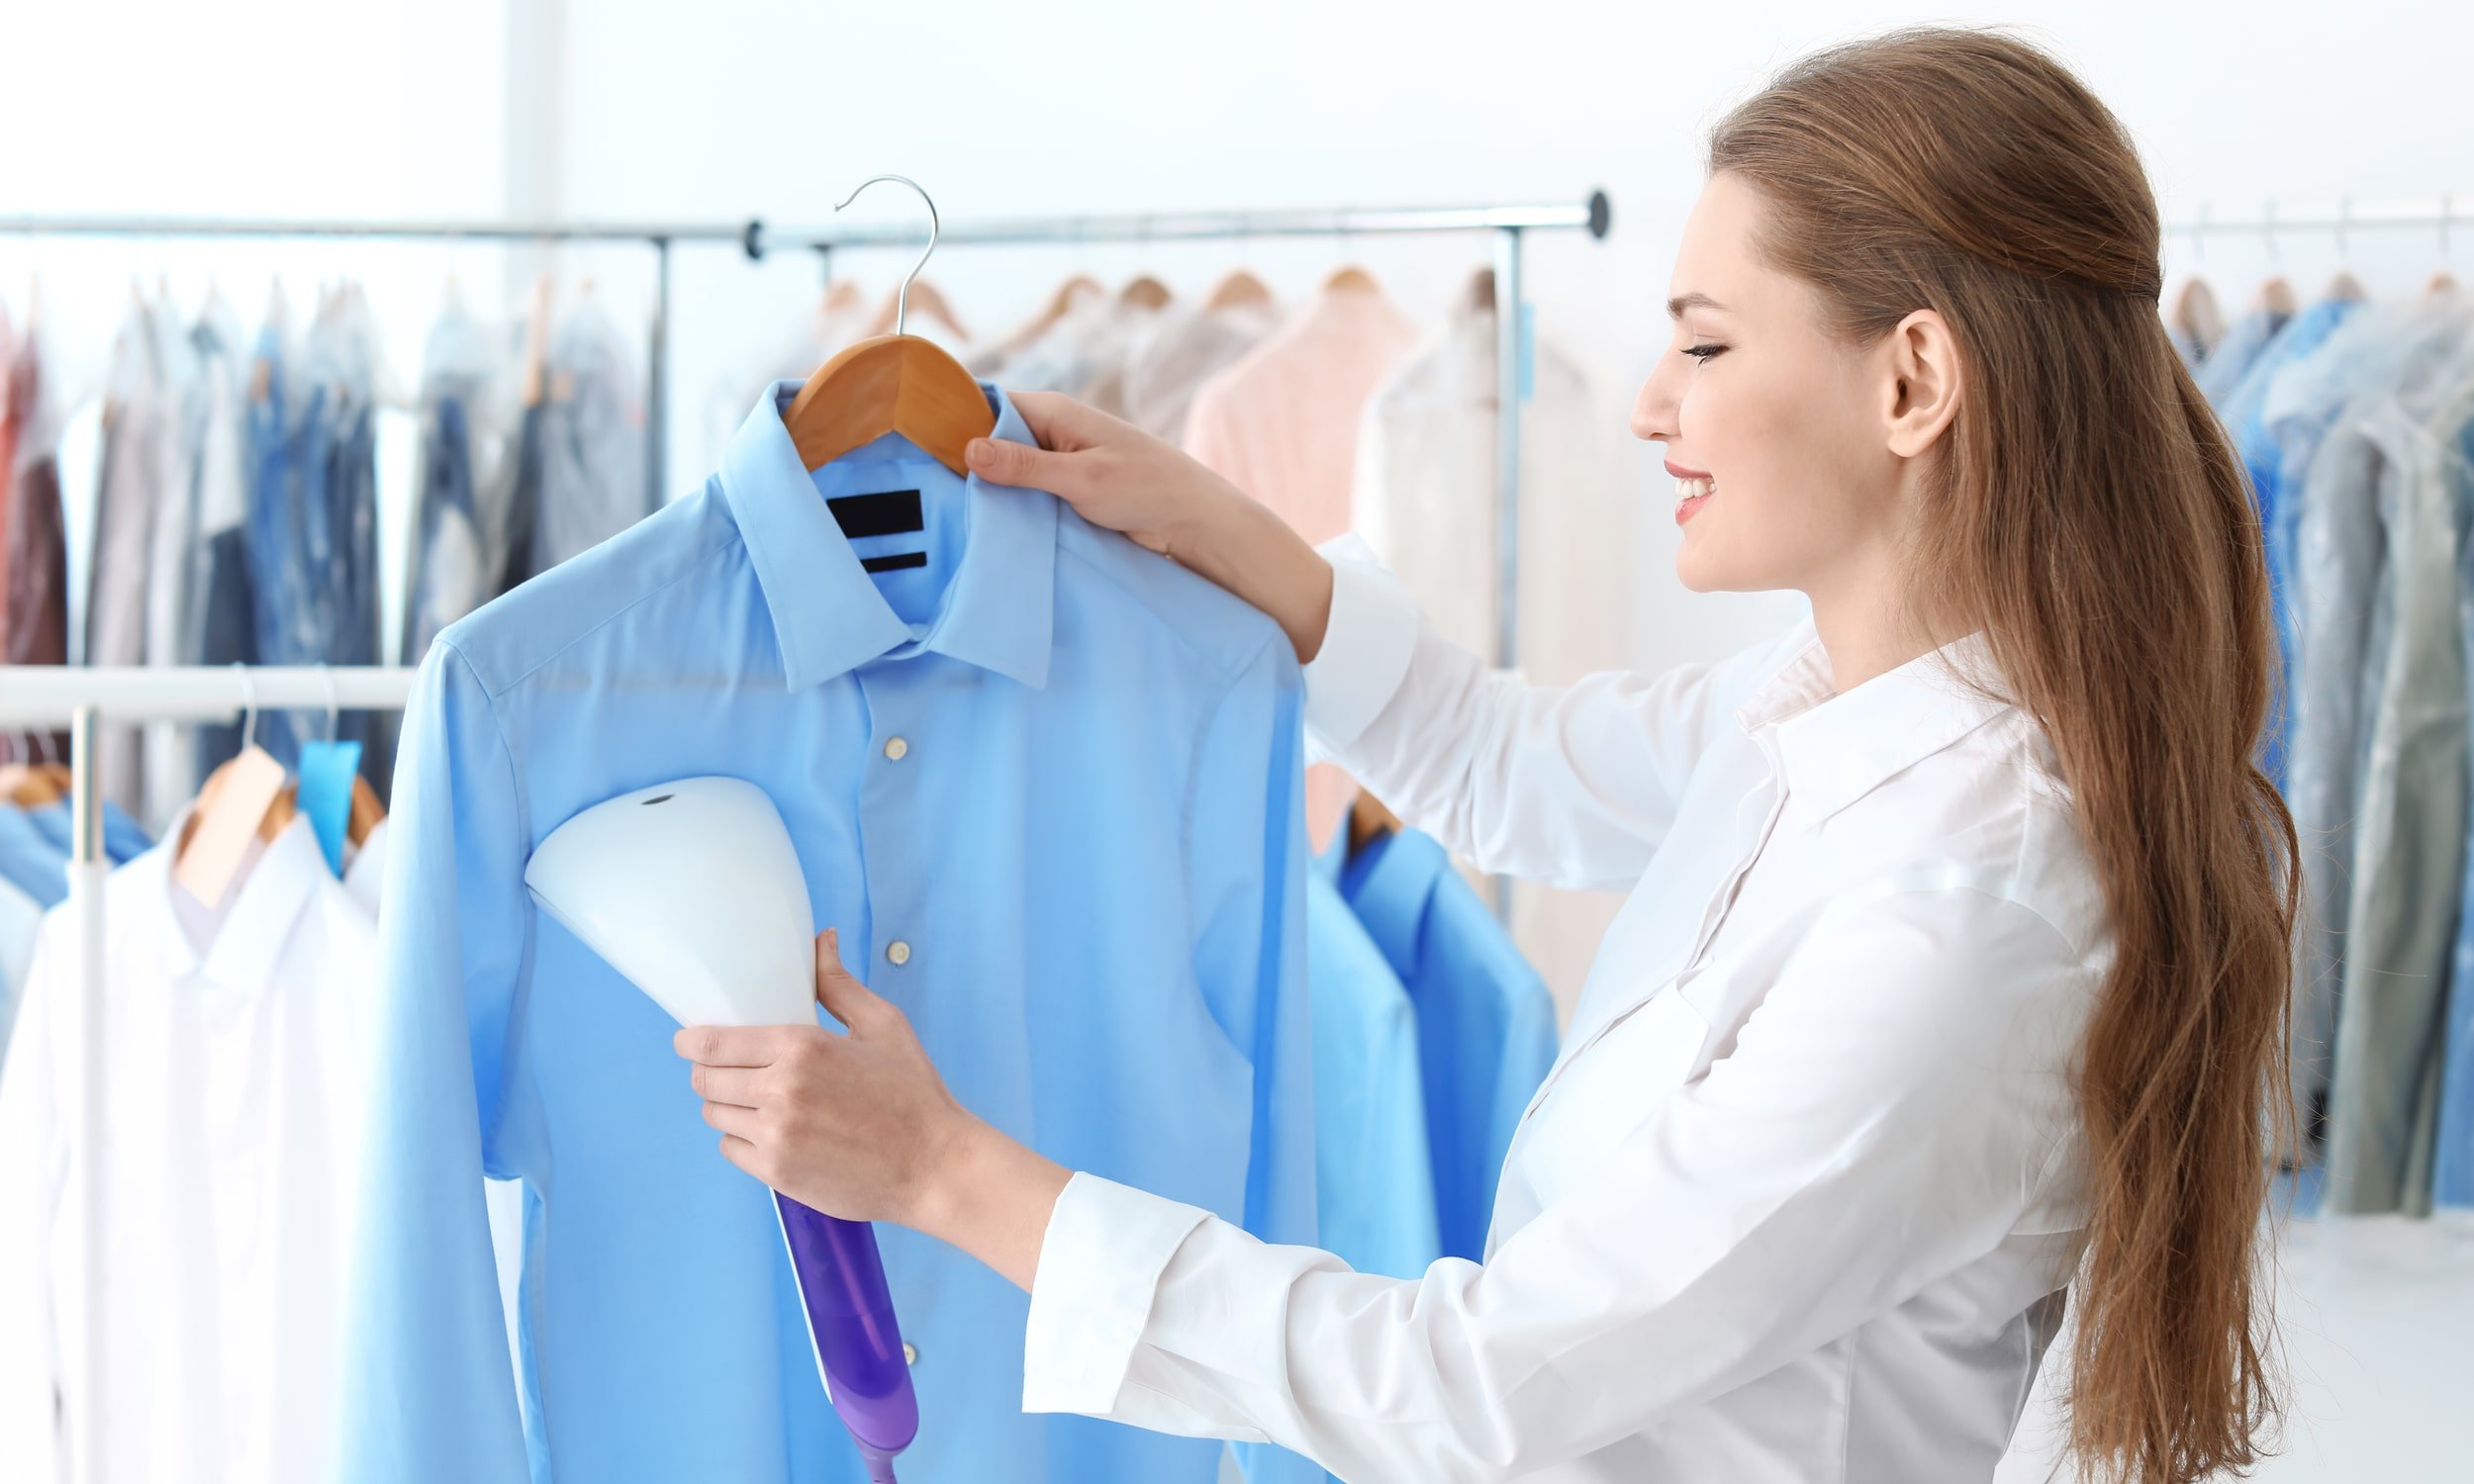 девушка гладит рубашку голубого цвета отпаривателем